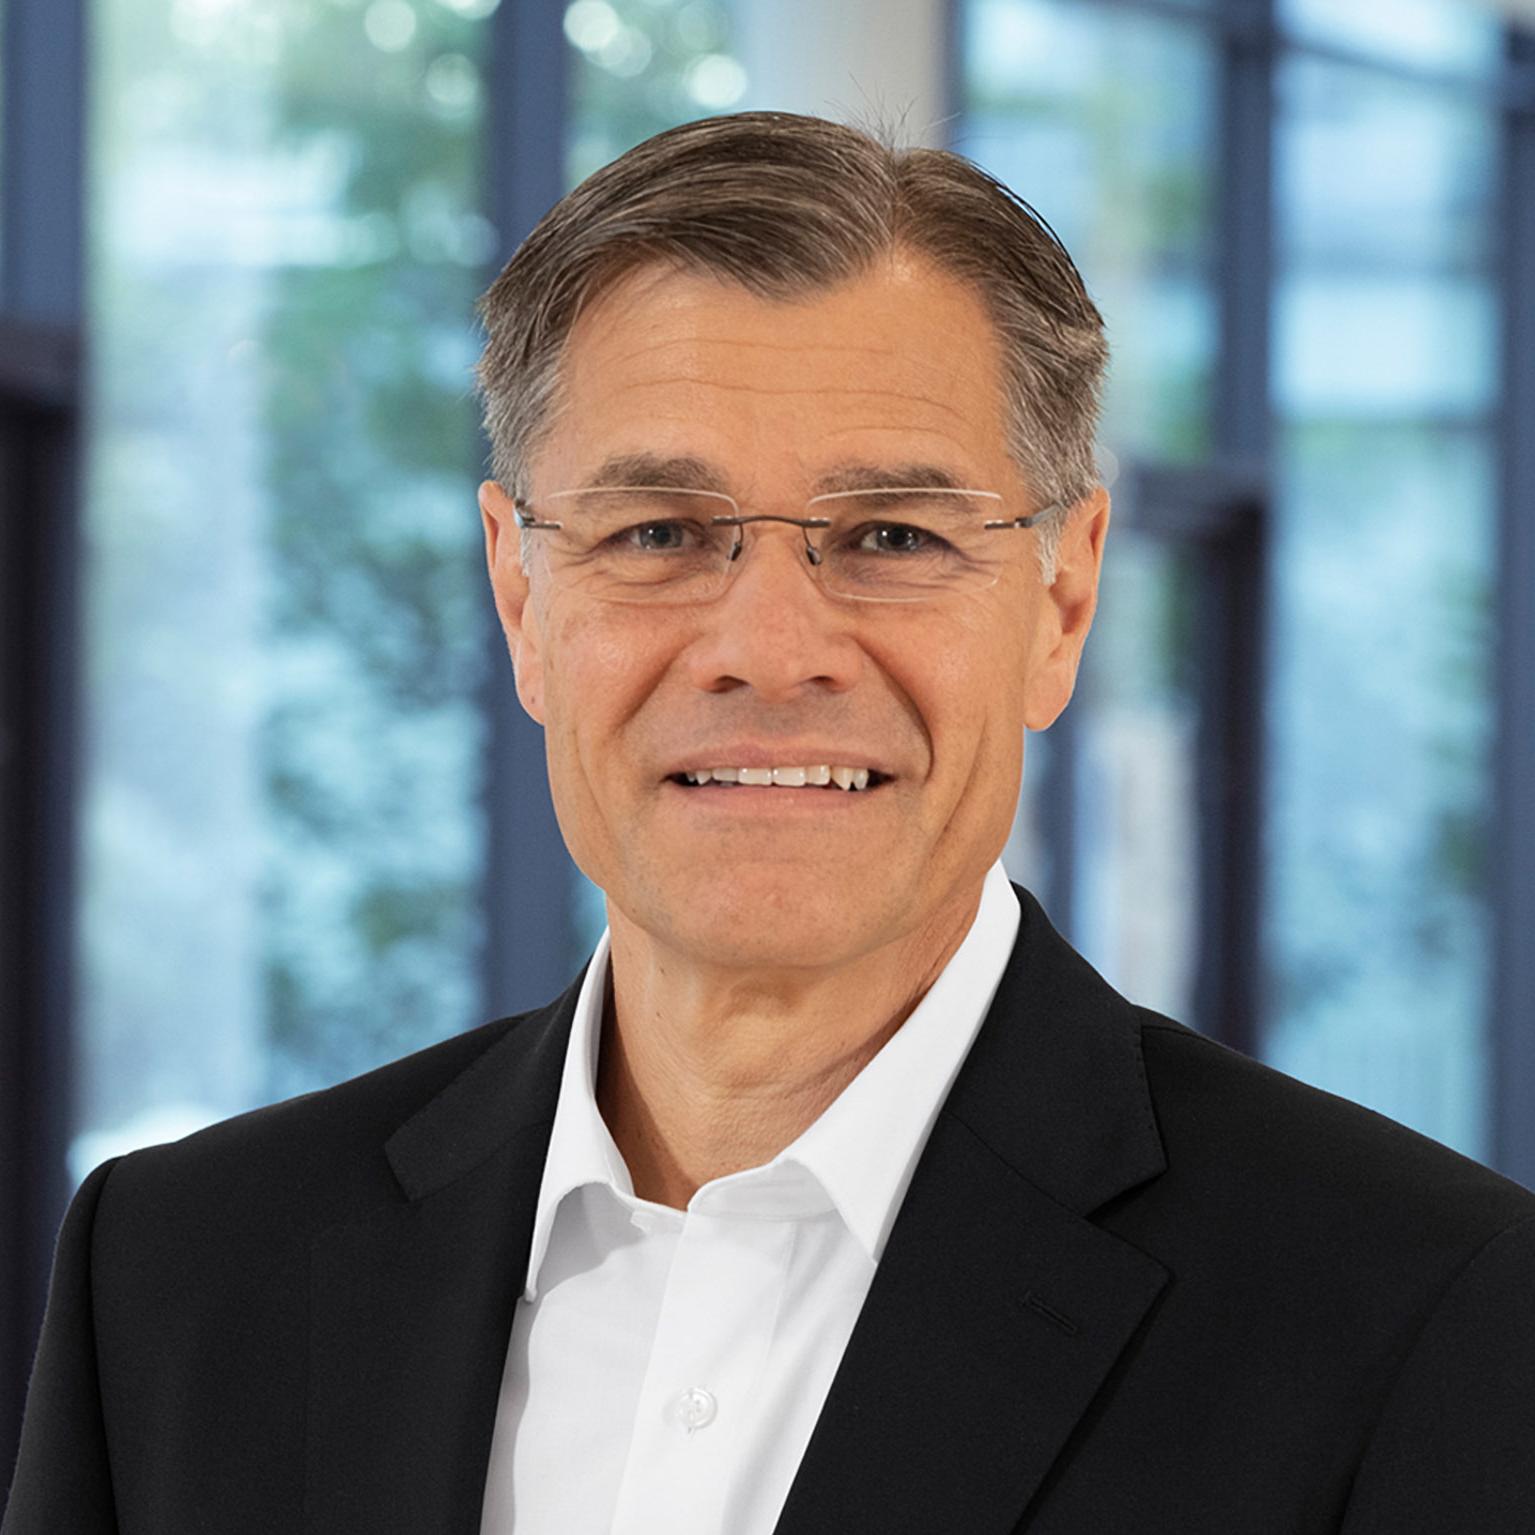 Dr. Karl Lamprecht, CEO Carl Zeiss AG